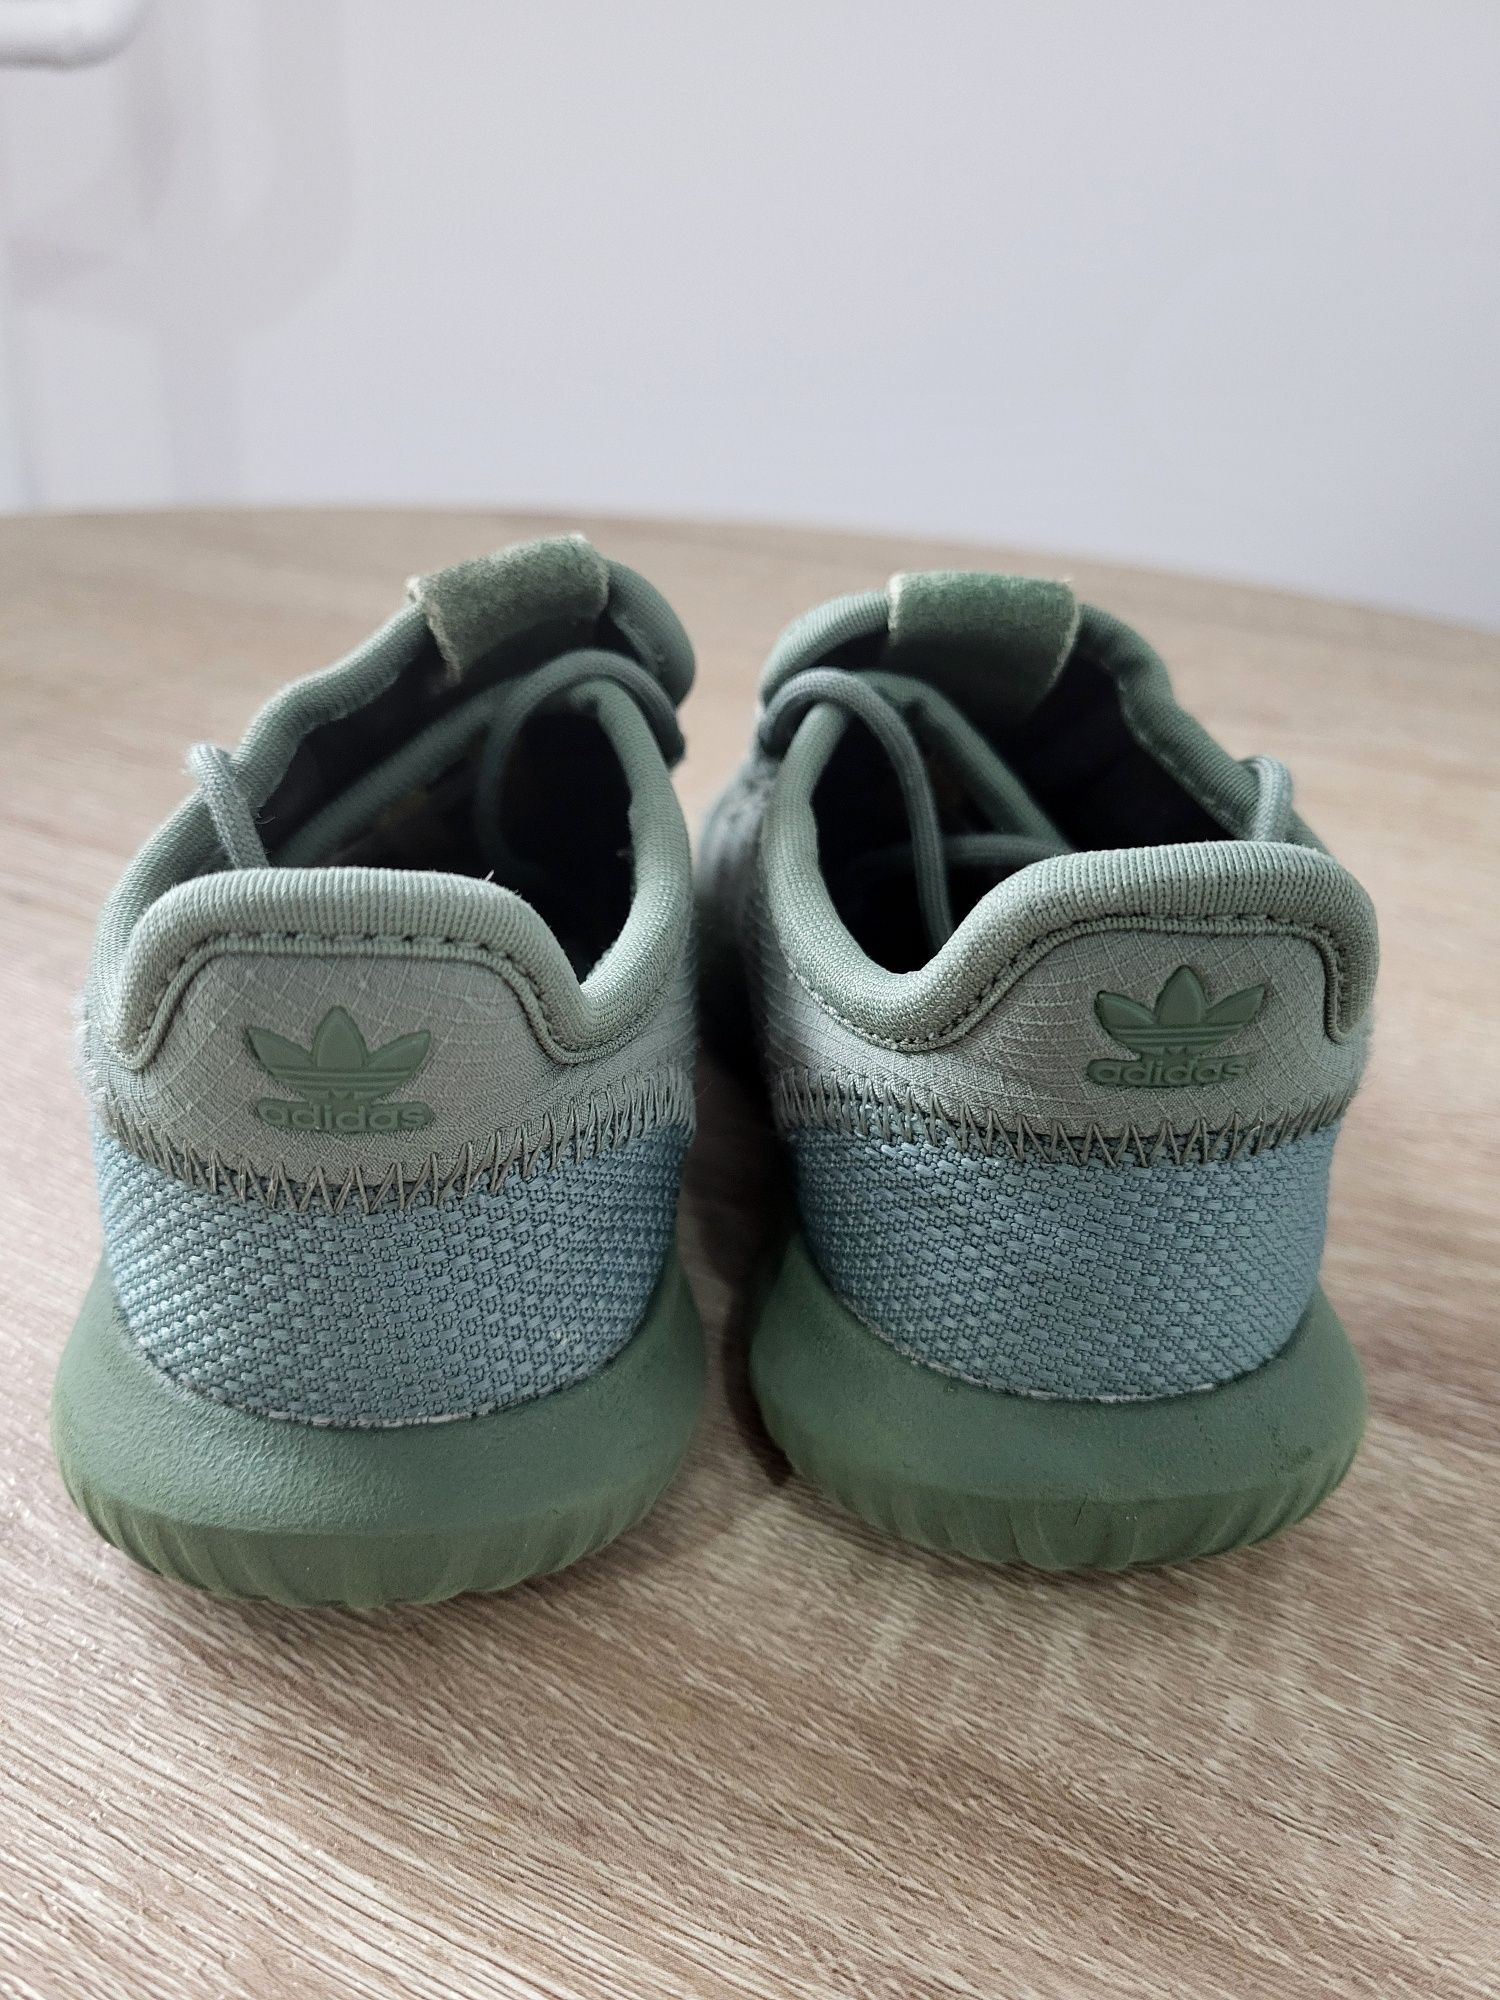 Buty adidasy dla chłopca zielone khaki Adidas oryginalne r 26